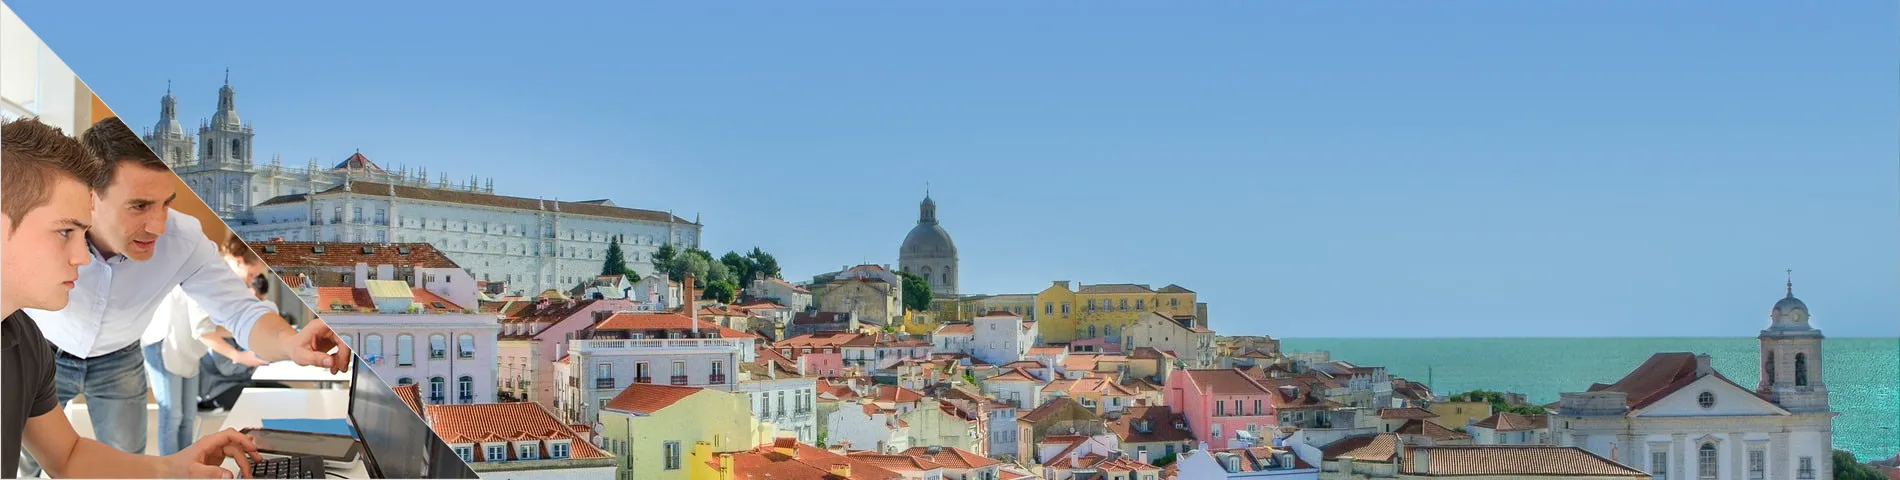 Lizbona - Program praktyk